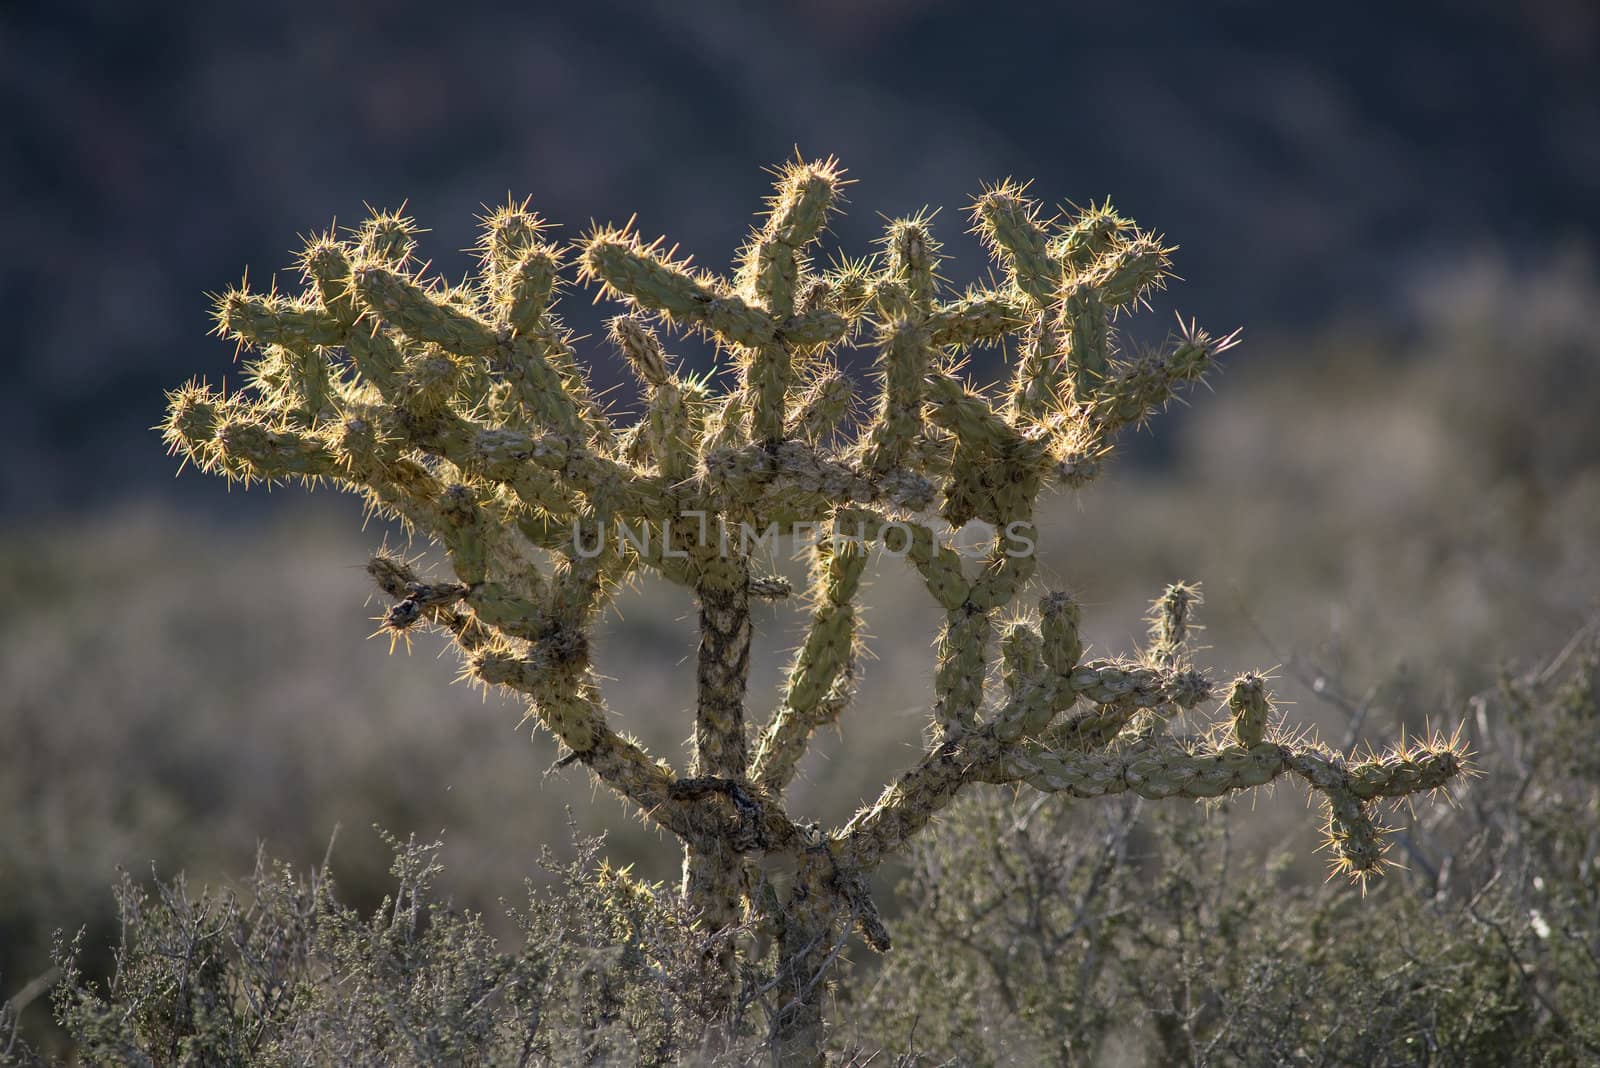 Pencil Cholla cactus (Opuntia ramosissima) at Red Rock Canyon, Mojave Desert, Nevada